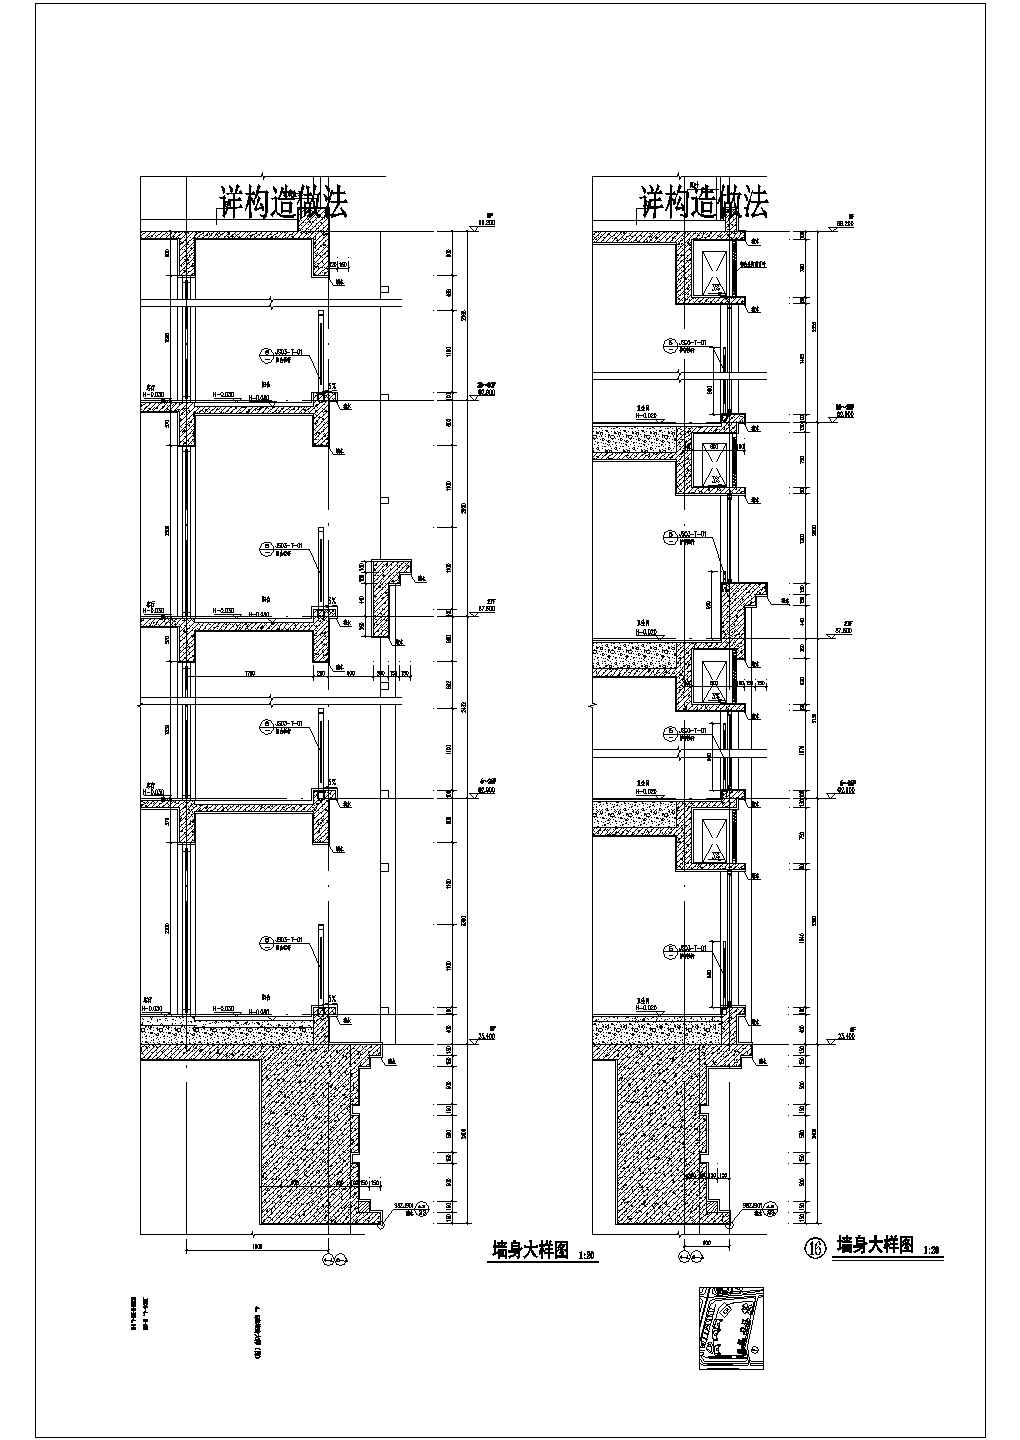 深圳市某地商业综合体项目建筑设计施工图